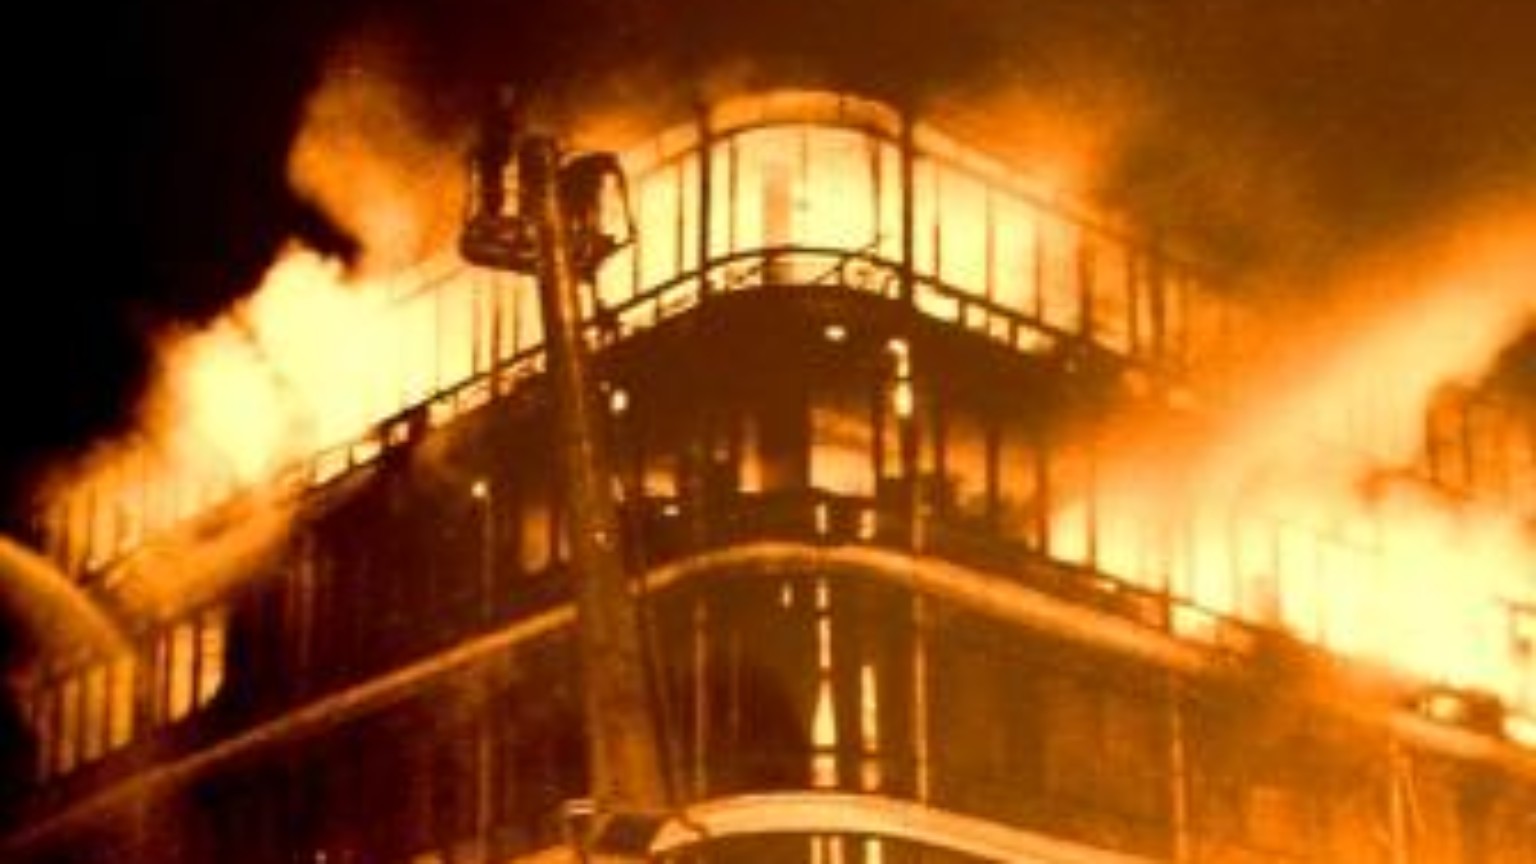 Zdjęcie dla kartki: Pożar Centralnego Domu Towarowego czyli późniejszego Smyka